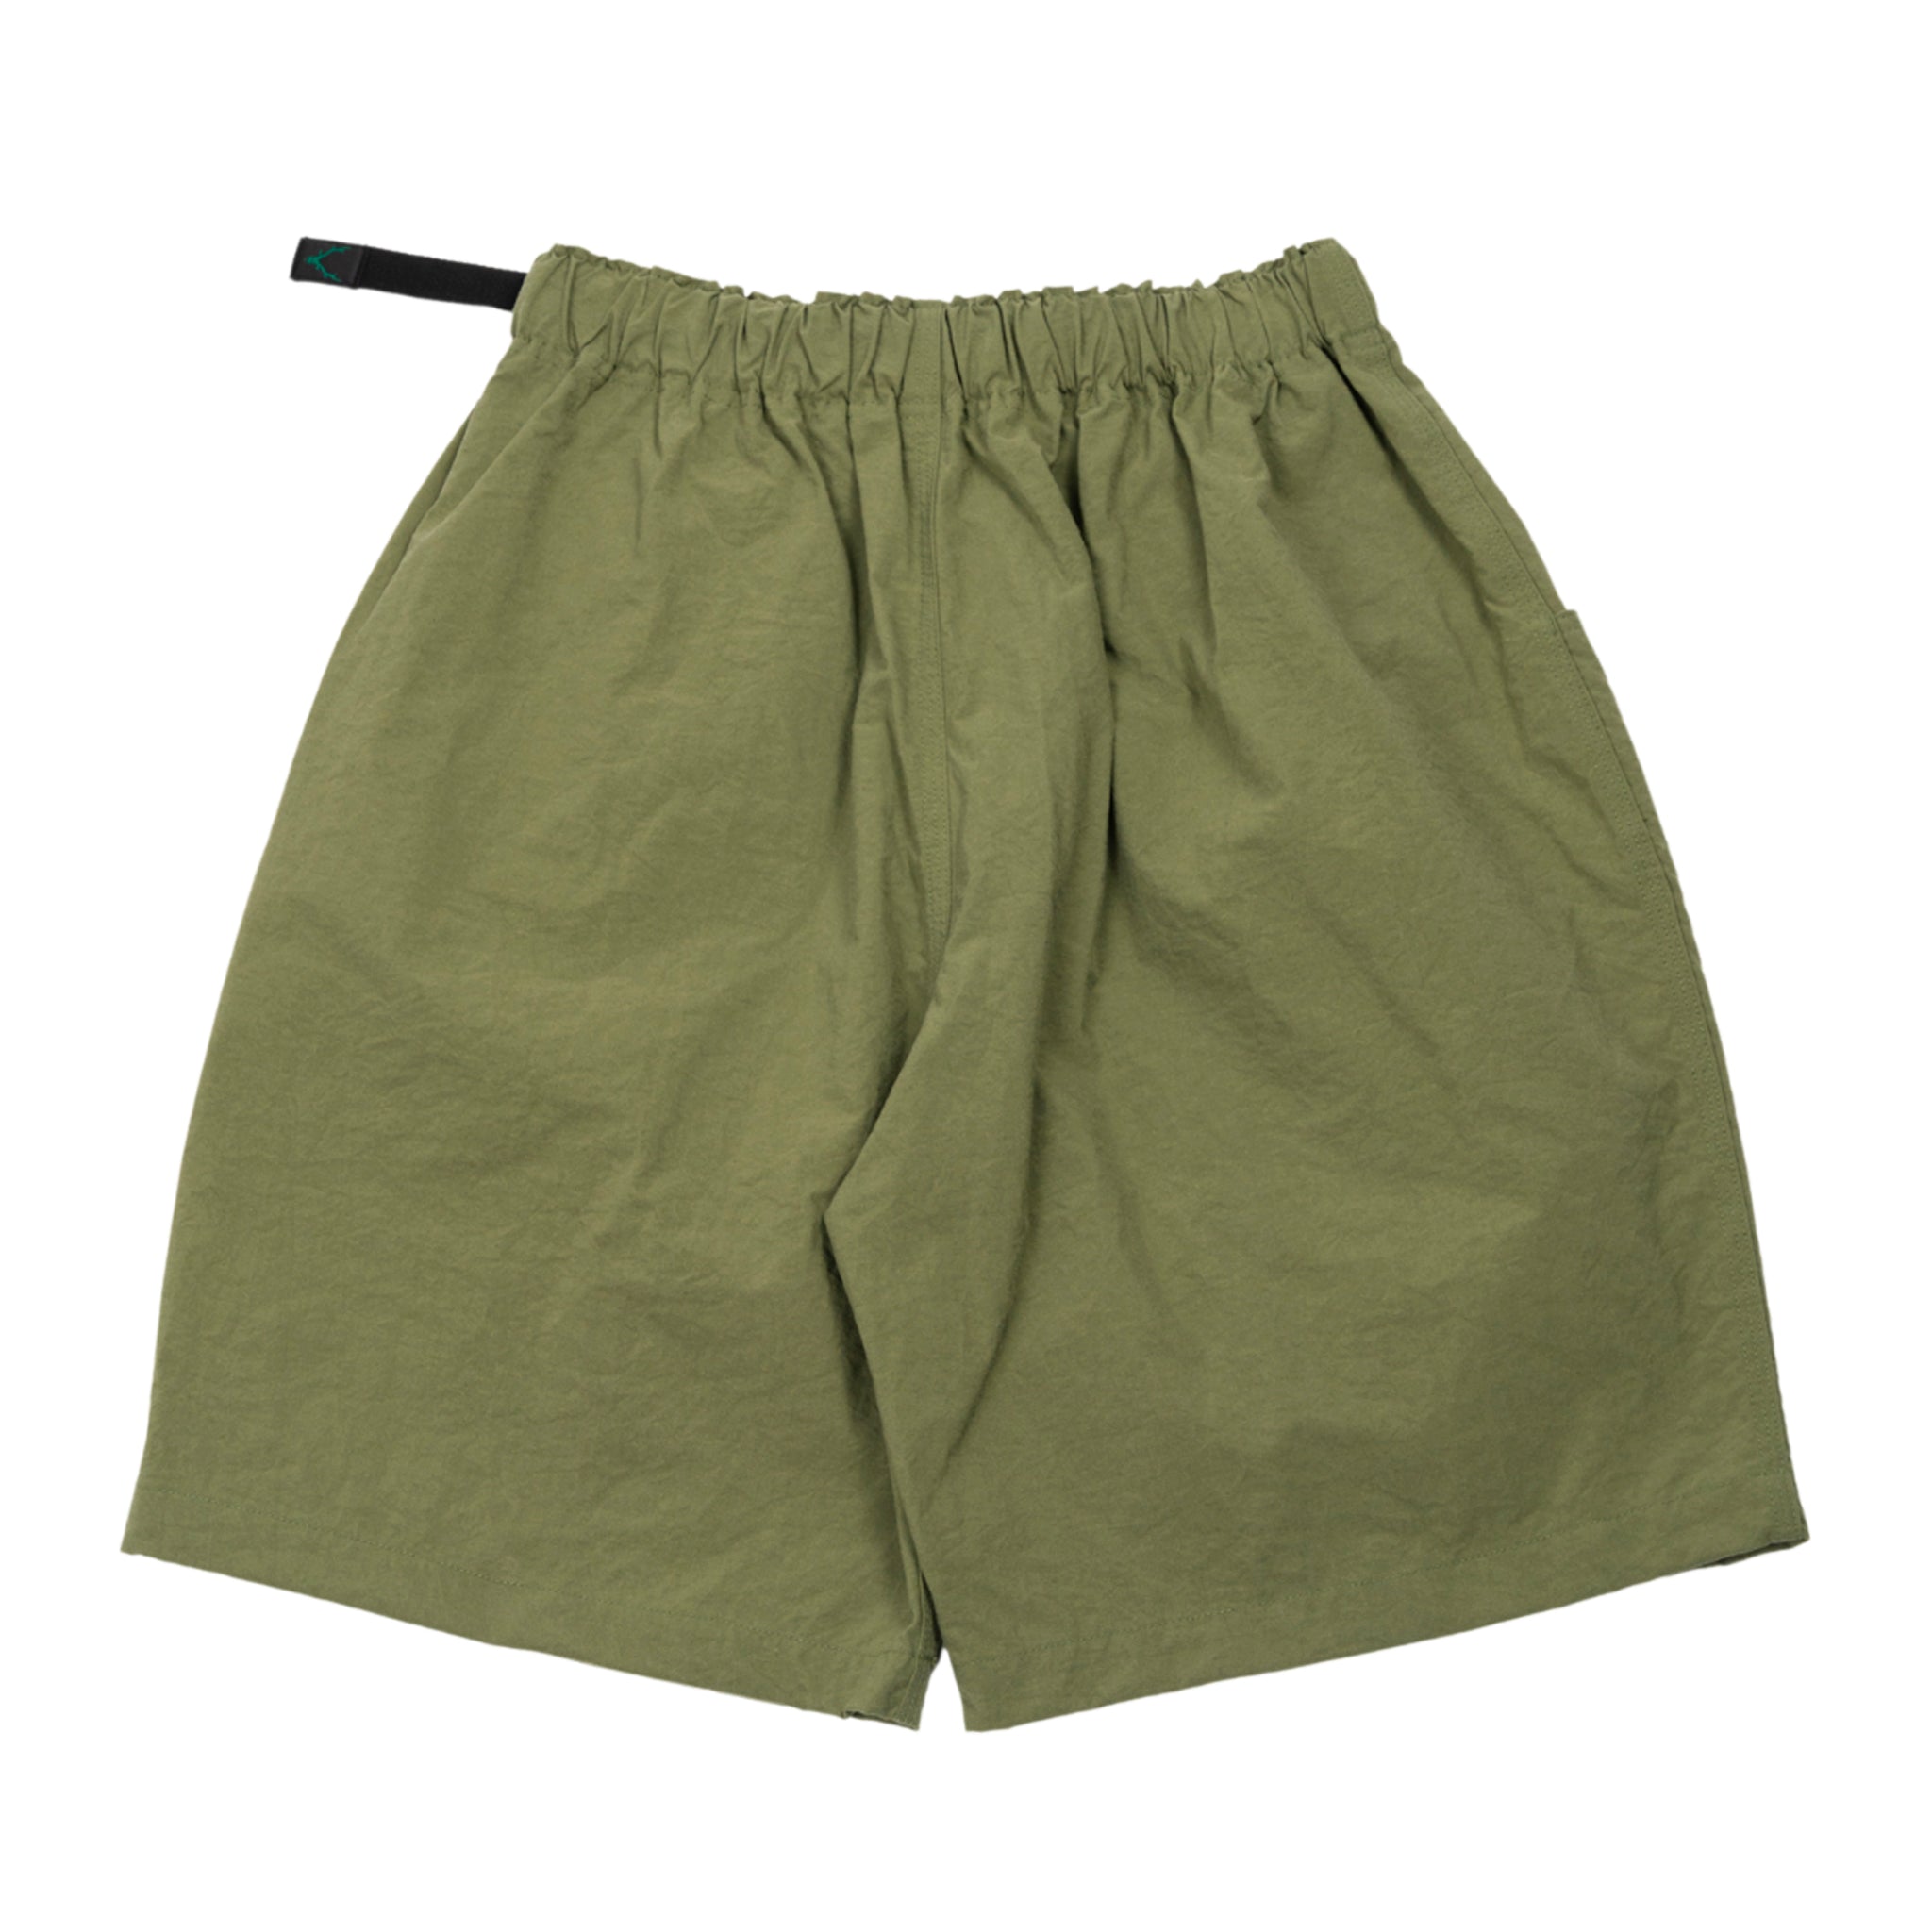 Belted pantaloncino in nylon in verde oliva